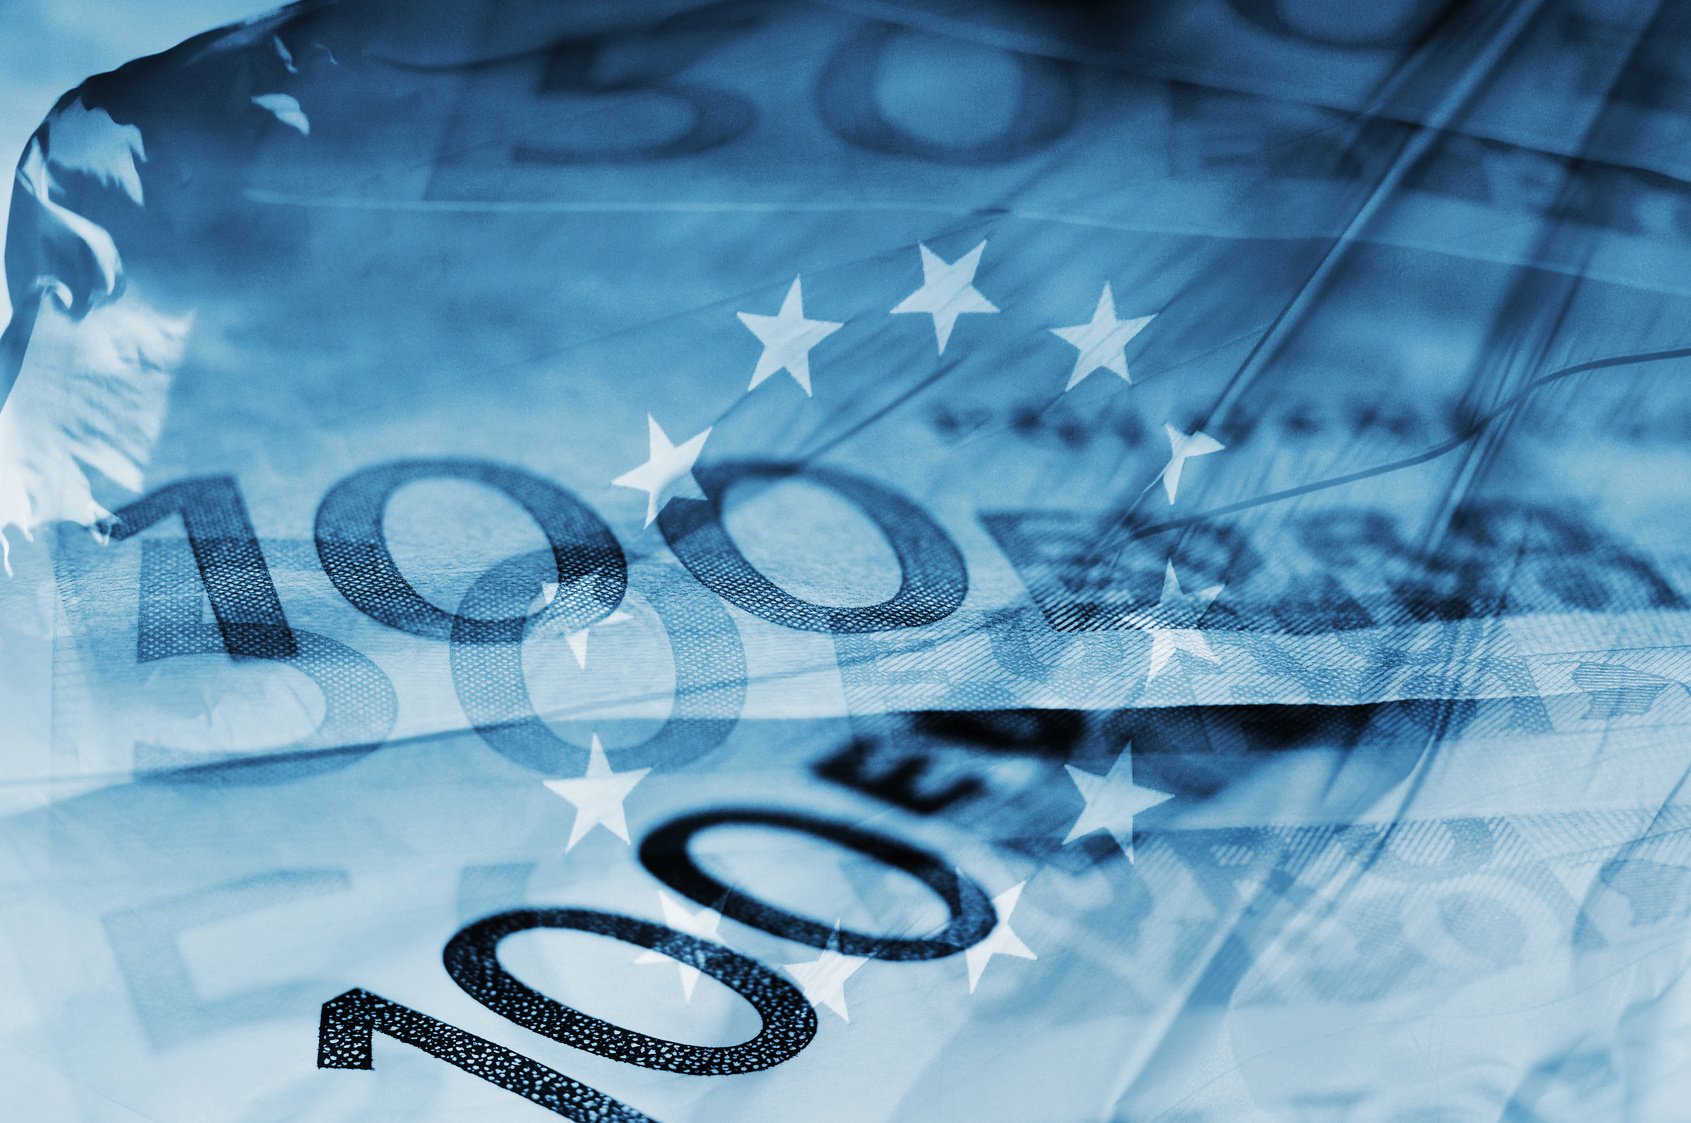 Τζεντιλόνι - Μπρετόν: Οι ευρωπαίοι επίτροποι προτείνουν κοινό δανεισμό μεταξύ των 27